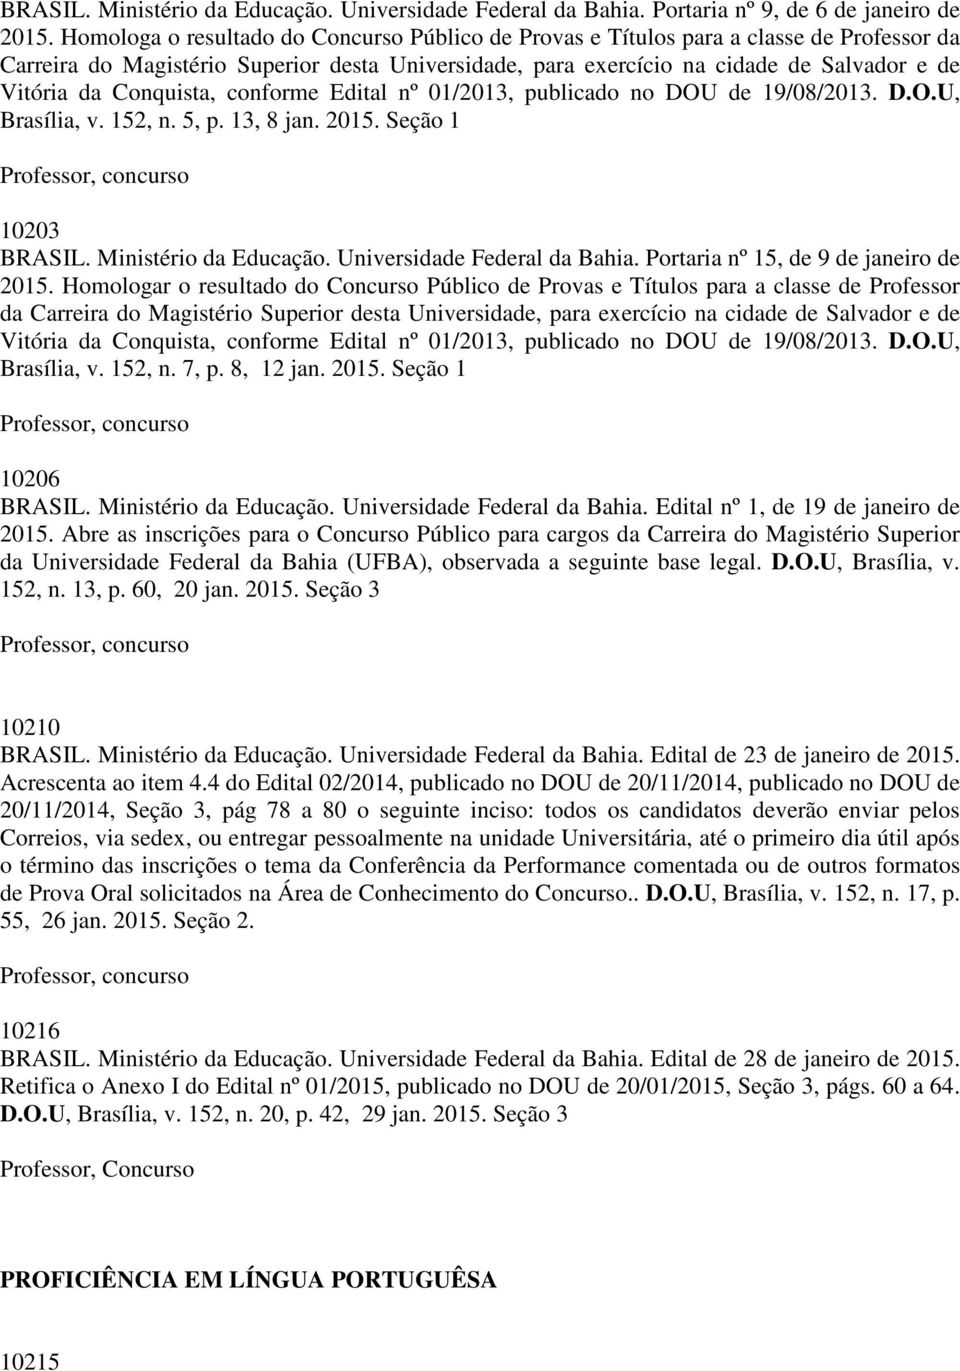 Conquista, conforme Edital nº 01/2013, publicado no DOU de 19/08/2013. D.O.U, Brasília, v. 152, n. 5, p. 13, 8 jan. 2015. Seção 1 10203 BRASIL. Ministério da Educação. Universidade Federal da Bahia.